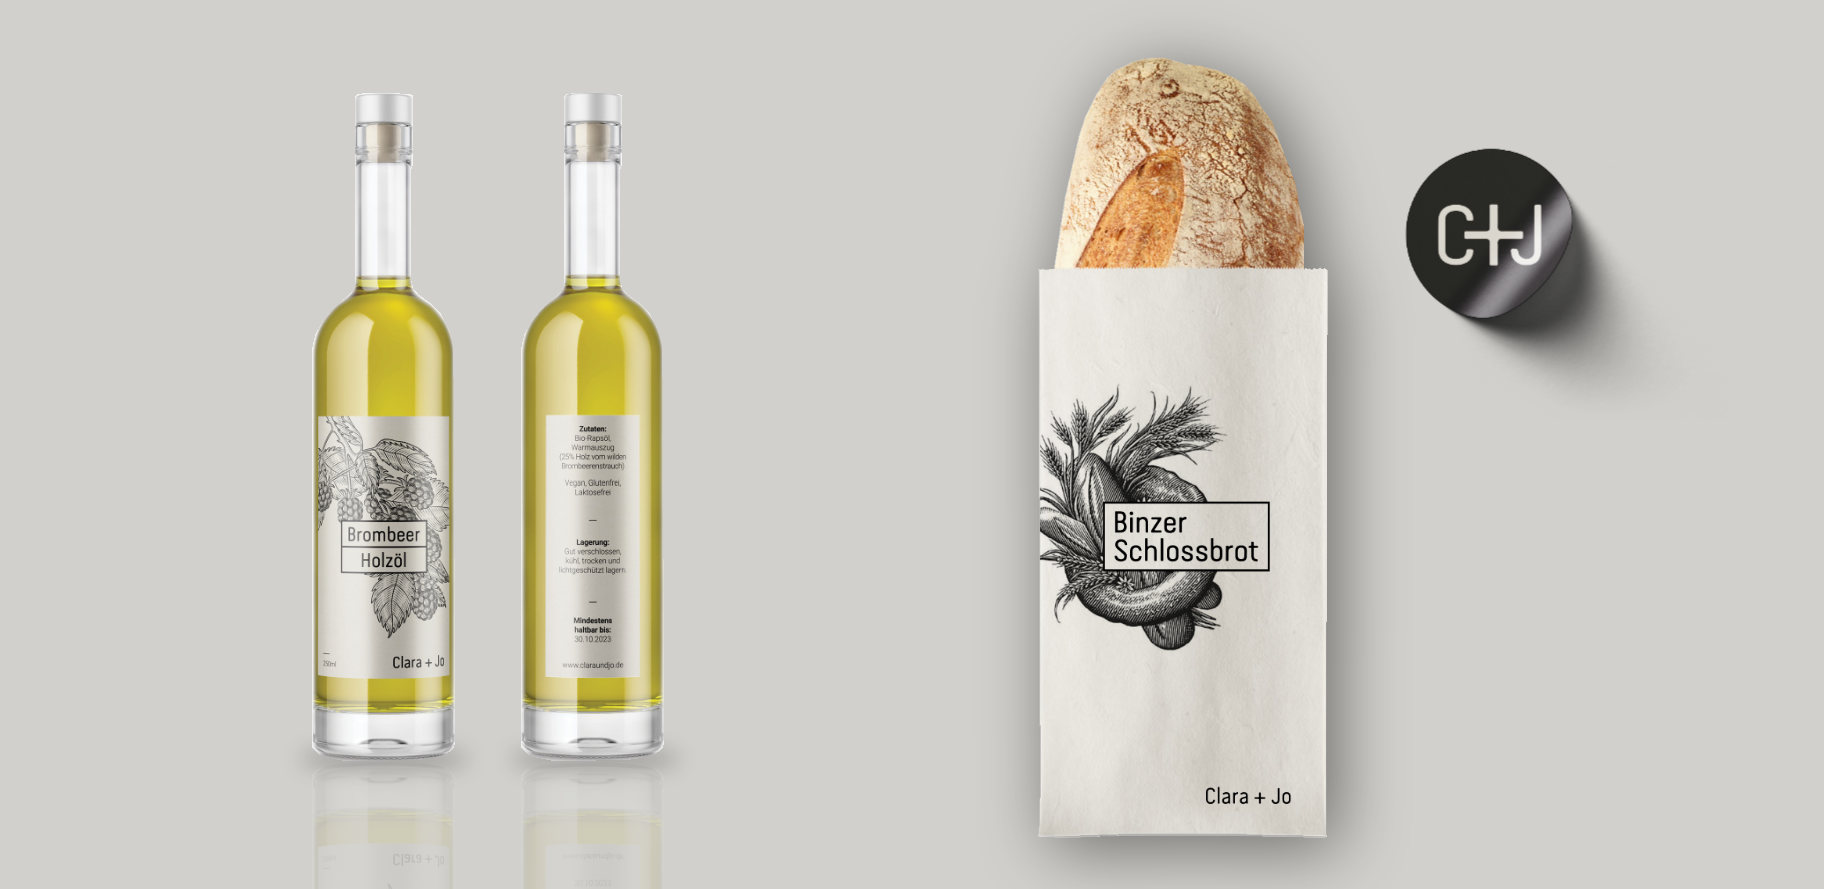 Junistudio - Corporatedesign Entwurf Packaging Gastronomie